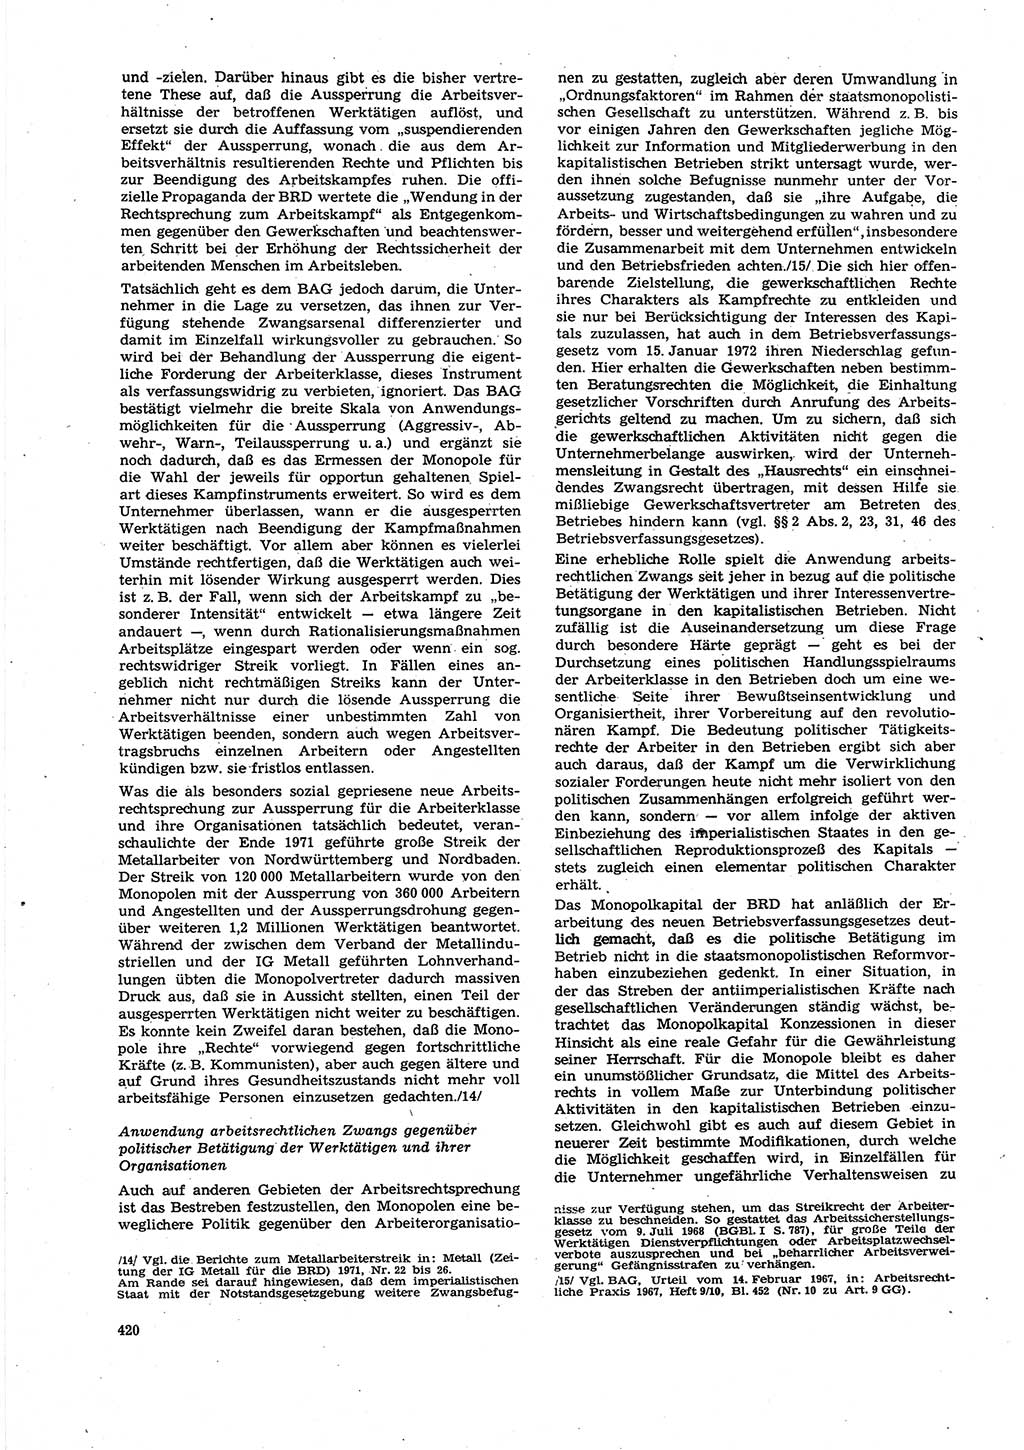 Neue Justiz (NJ), Zeitschrift für Recht und Rechtswissenschaft [Deutsche Demokratische Republik (DDR)], 27. Jahrgang 1973, Seite 420 (NJ DDR 1973, S. 420)